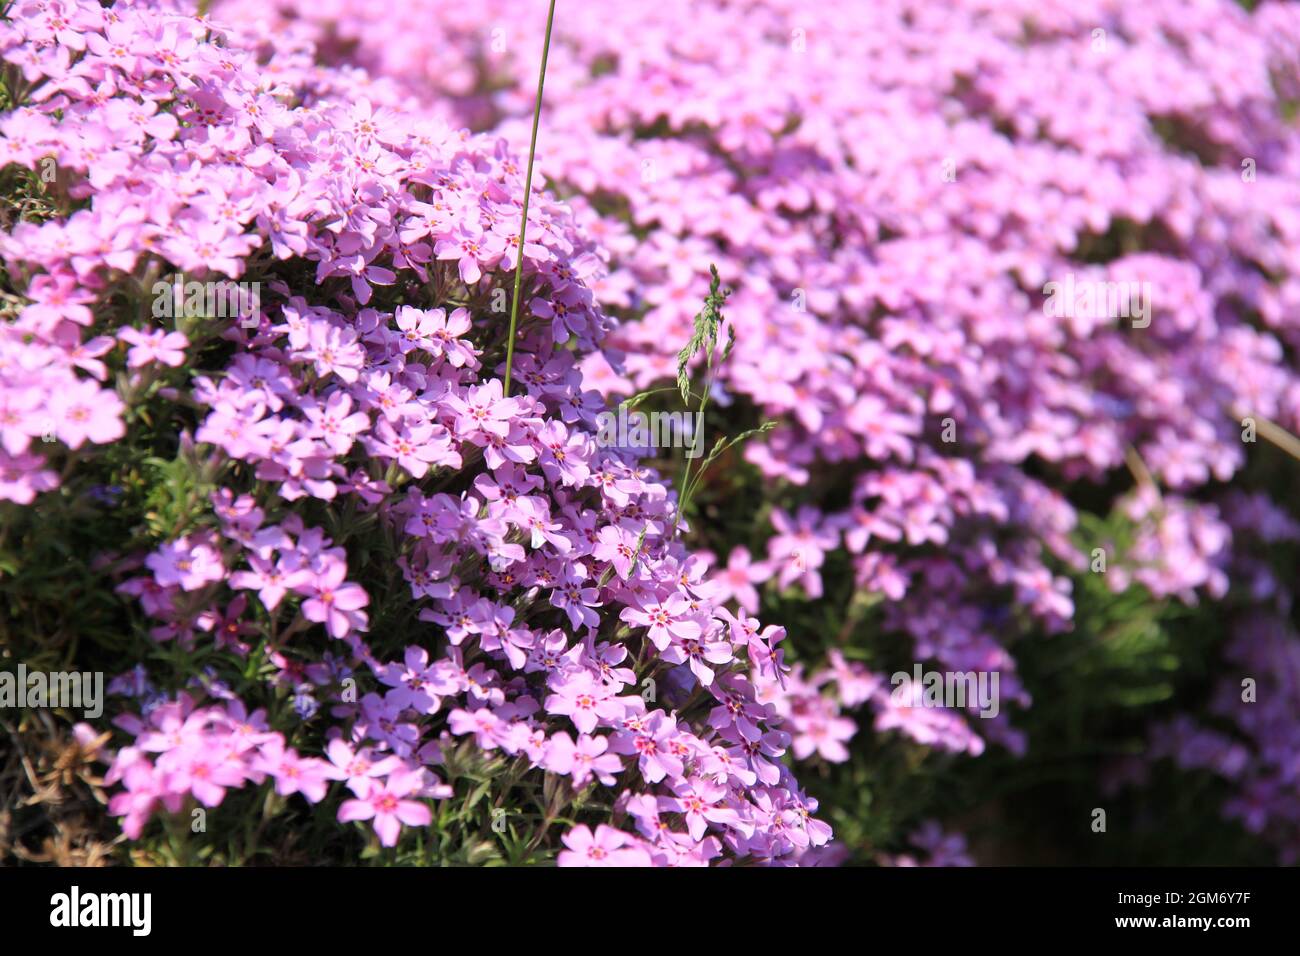 Splendid blooming phlox flowers Stock Photo